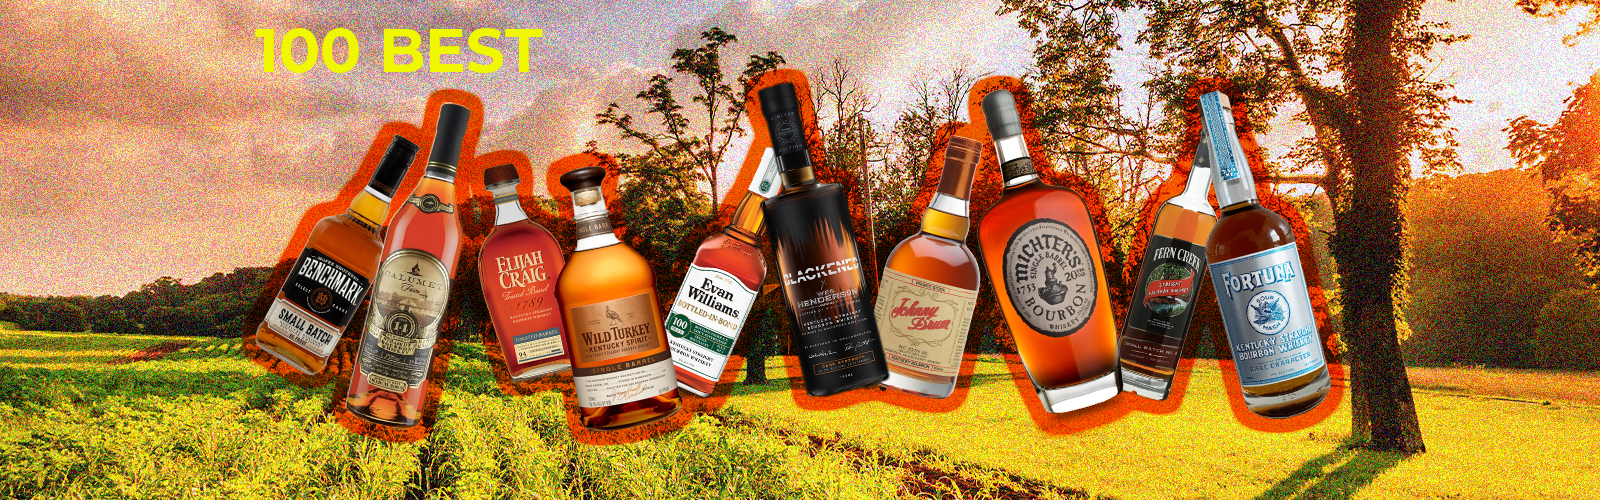 100 Best Kentucky Bourbons